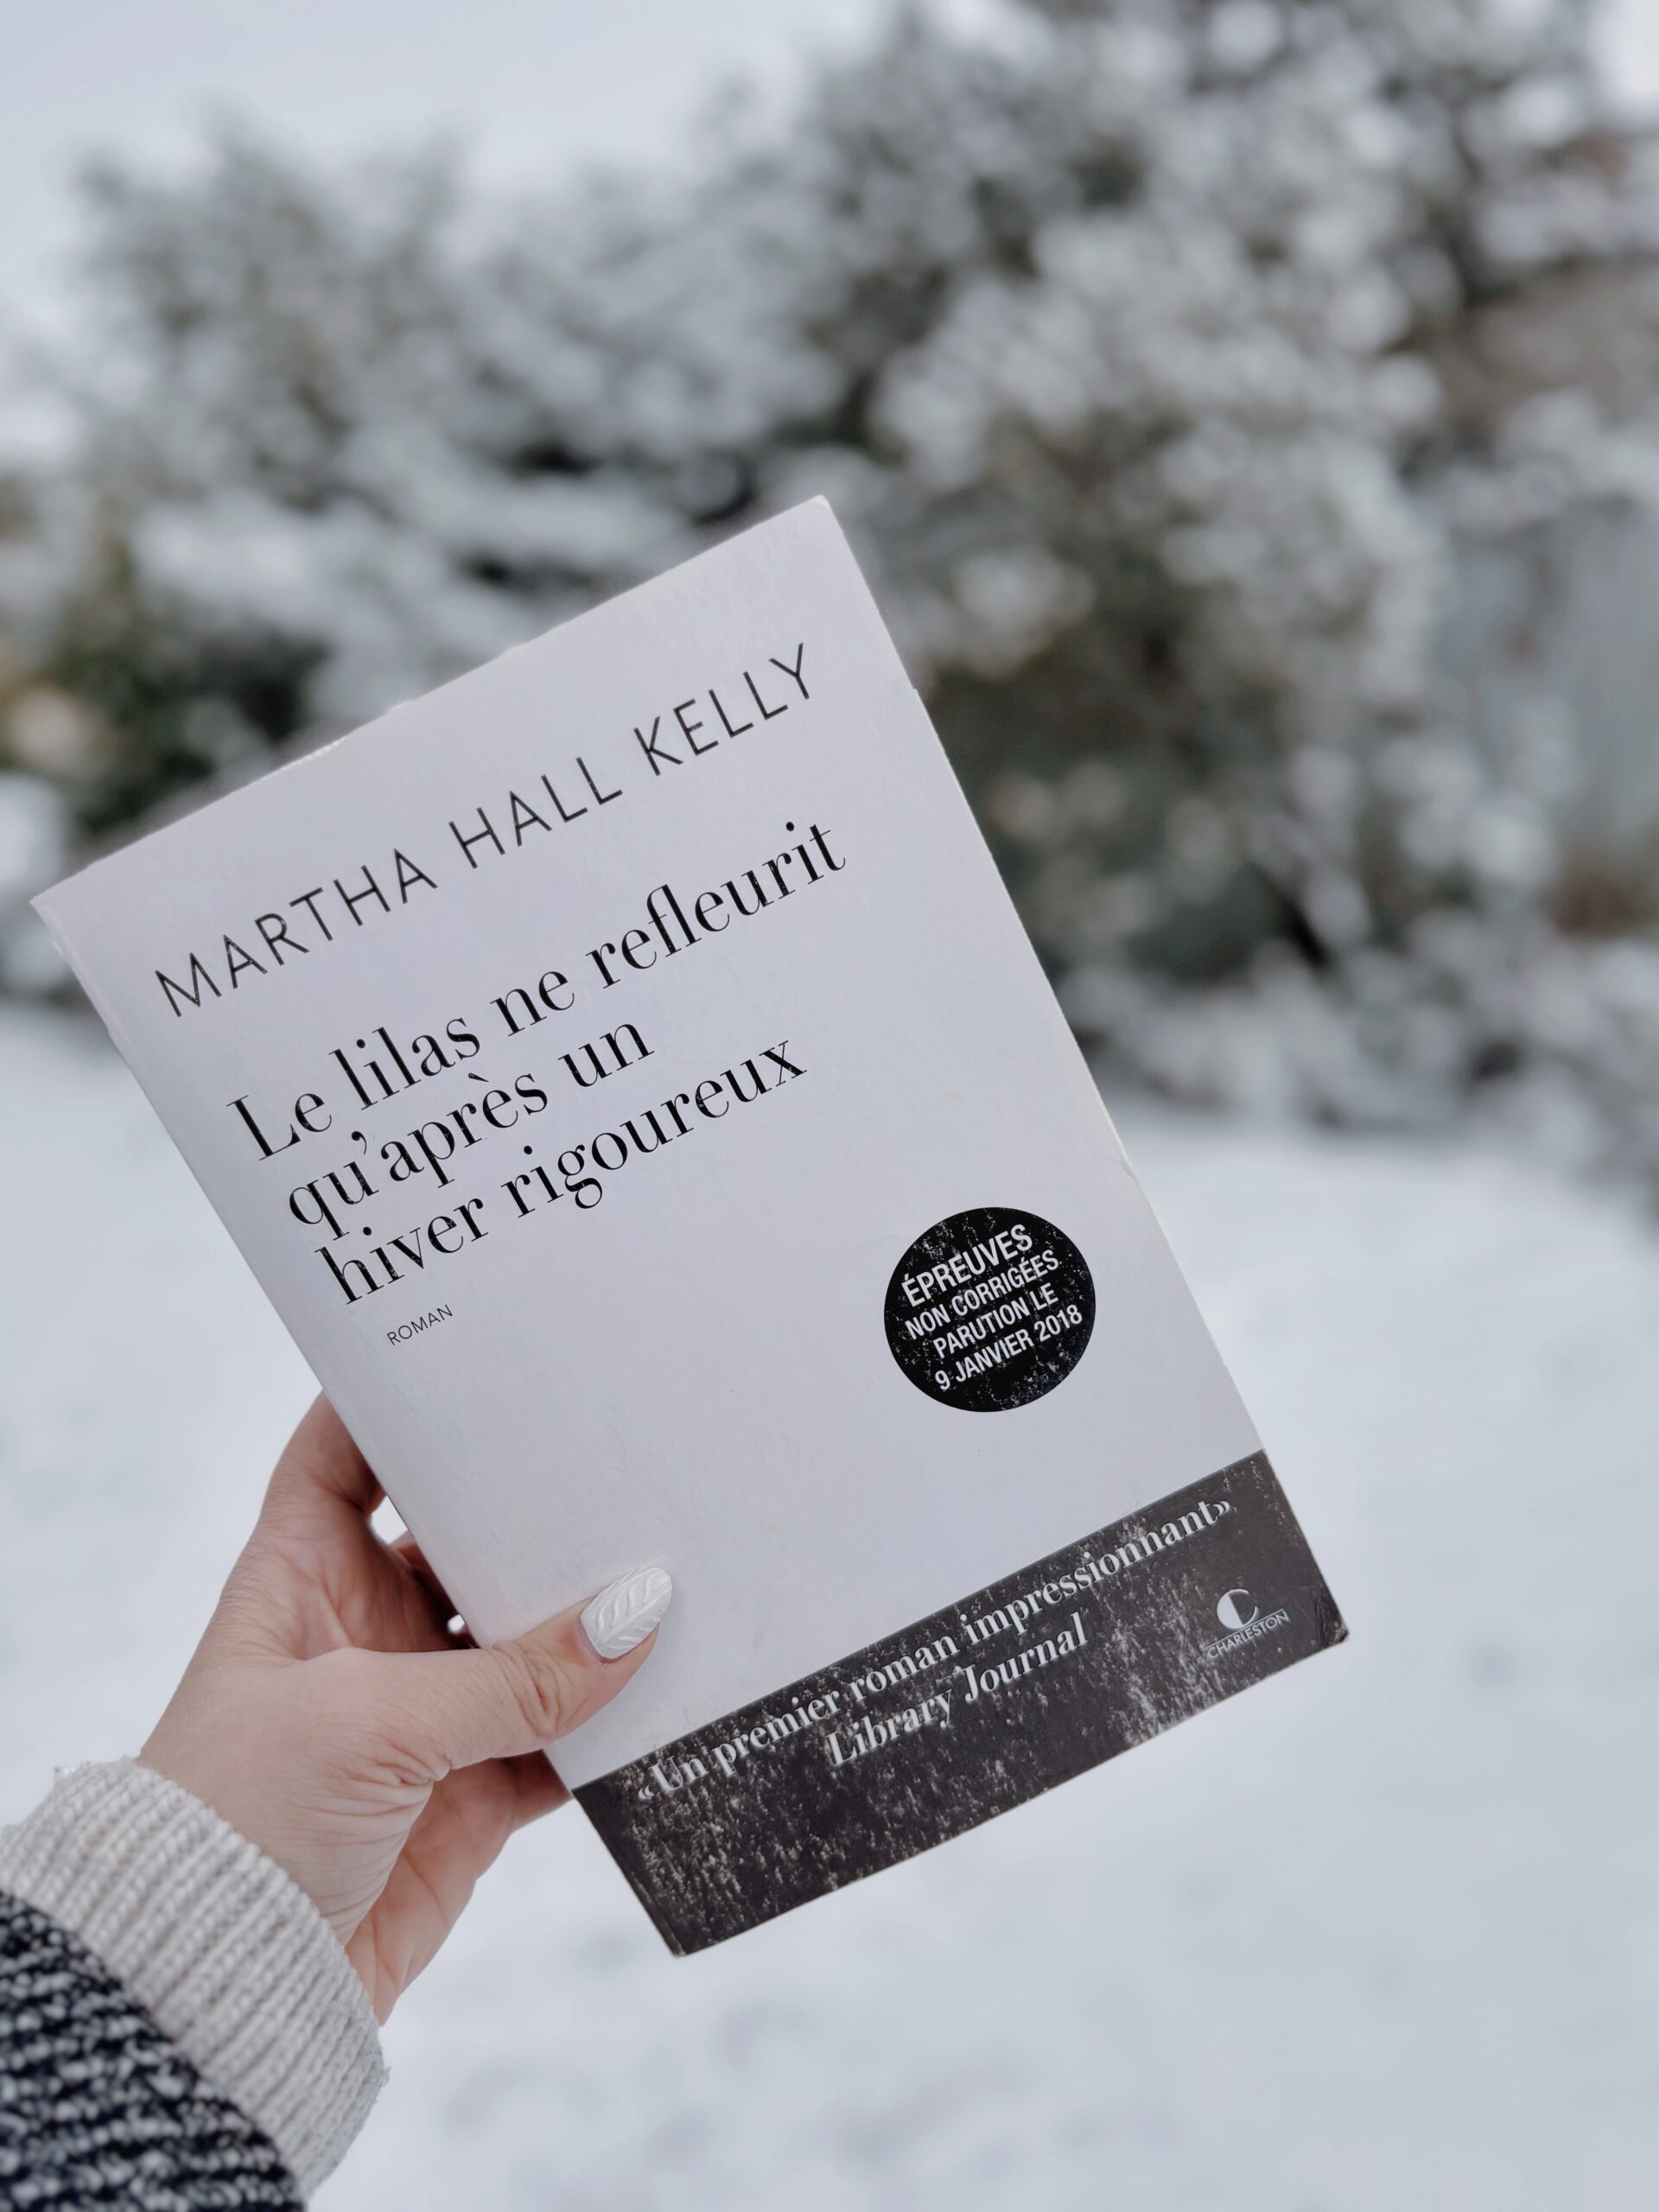 Le lilas ne refleurit qu'après un hiver rigoureux Martha Hall Kelly